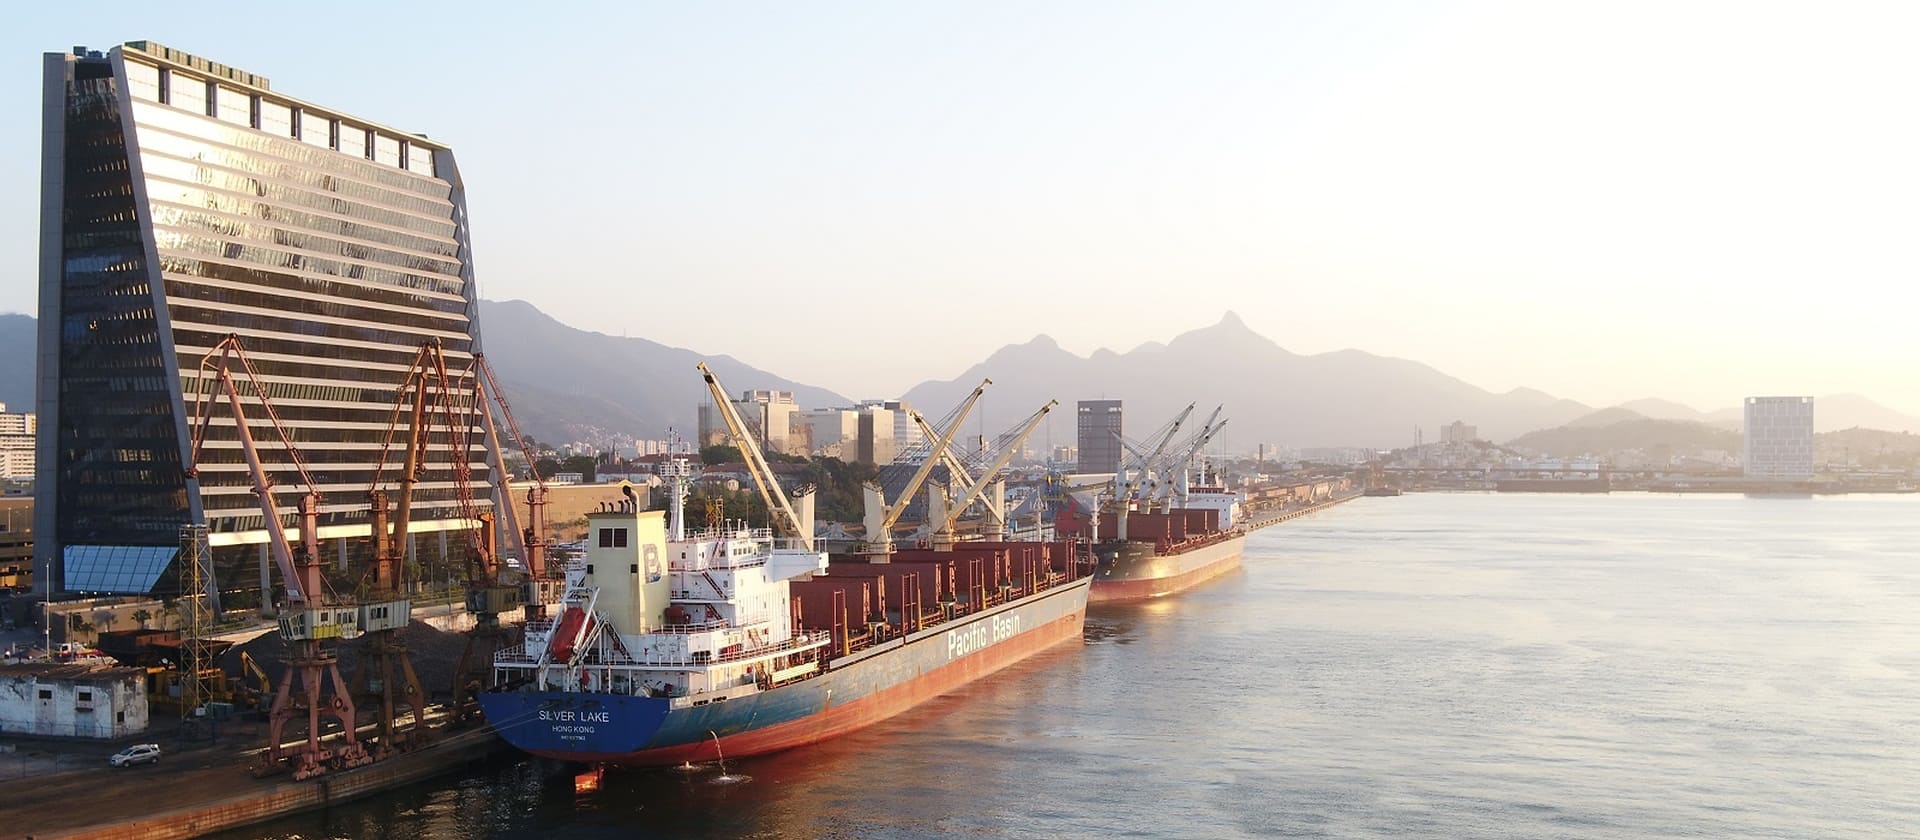 Port of Rio de Janeiro - Triunfo Terminal